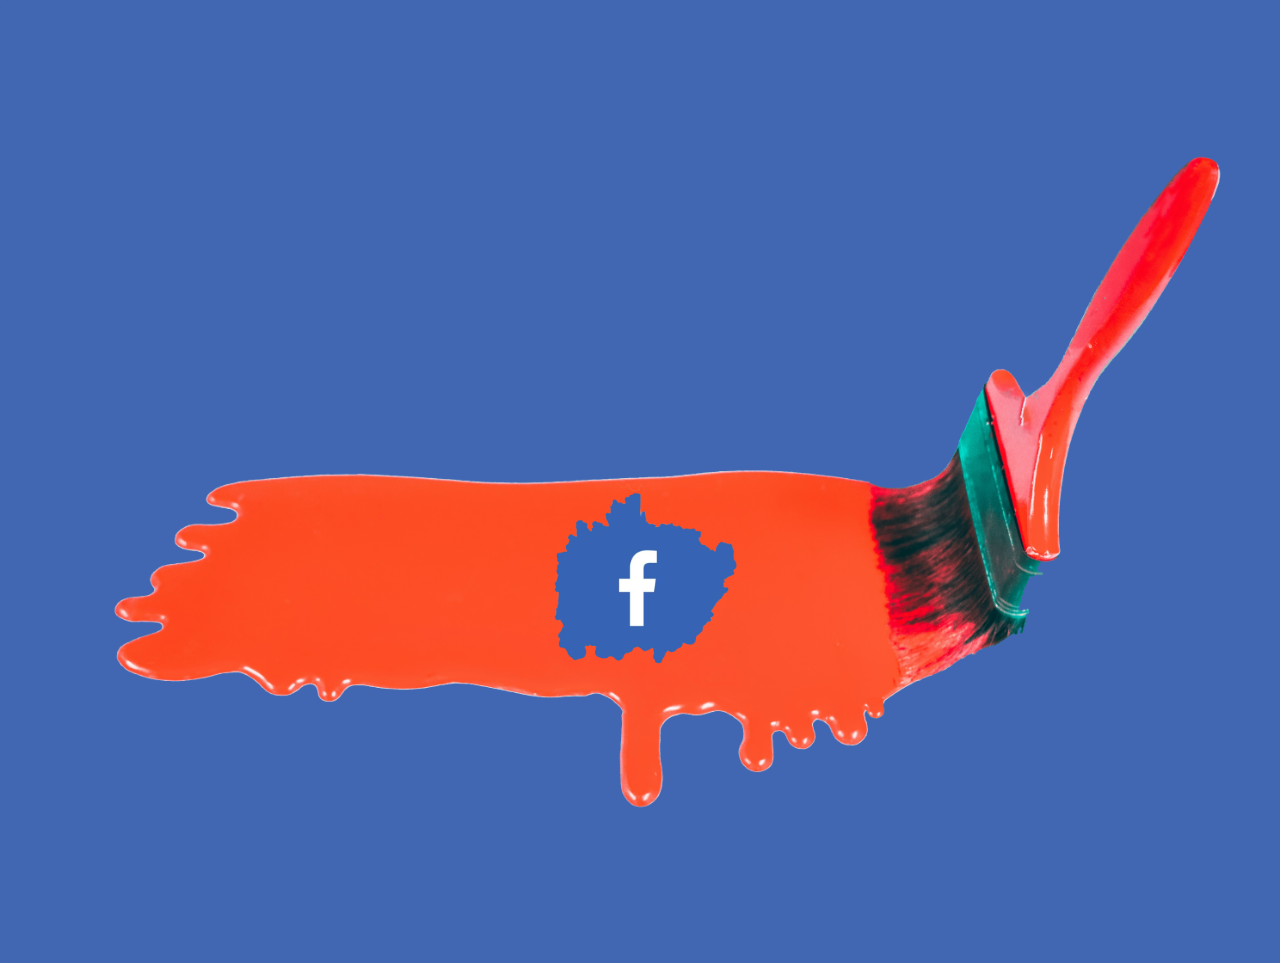 Denunciar contas falsas no Facebook era “esvaziar oceano com peneira”, diz ex-funcionária